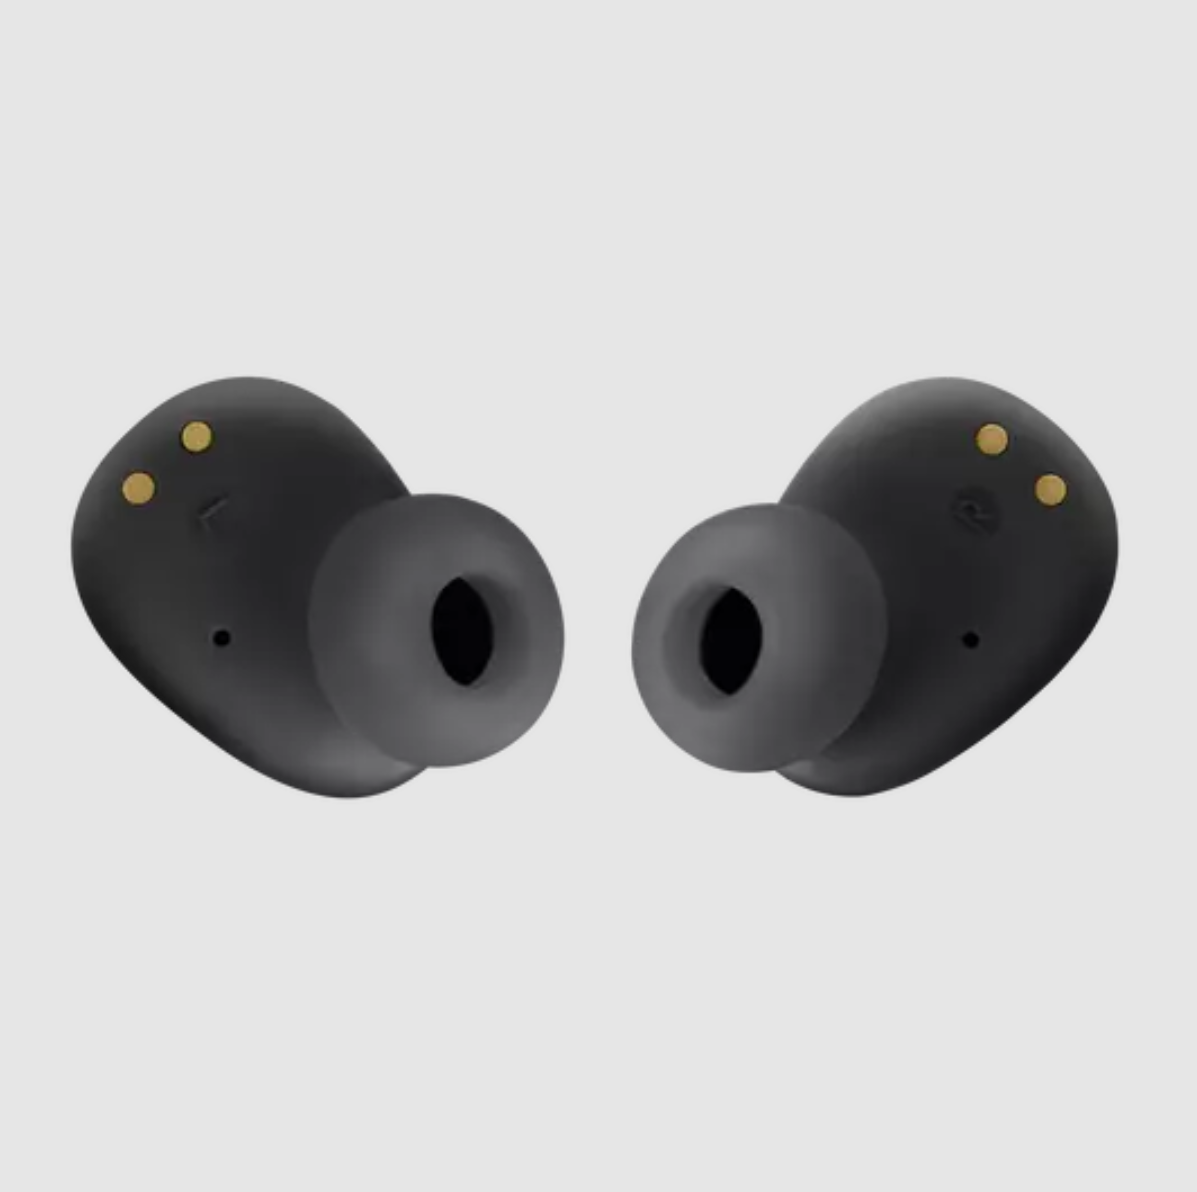 JBL Wave Buds - True Wireless Earbuds - Black